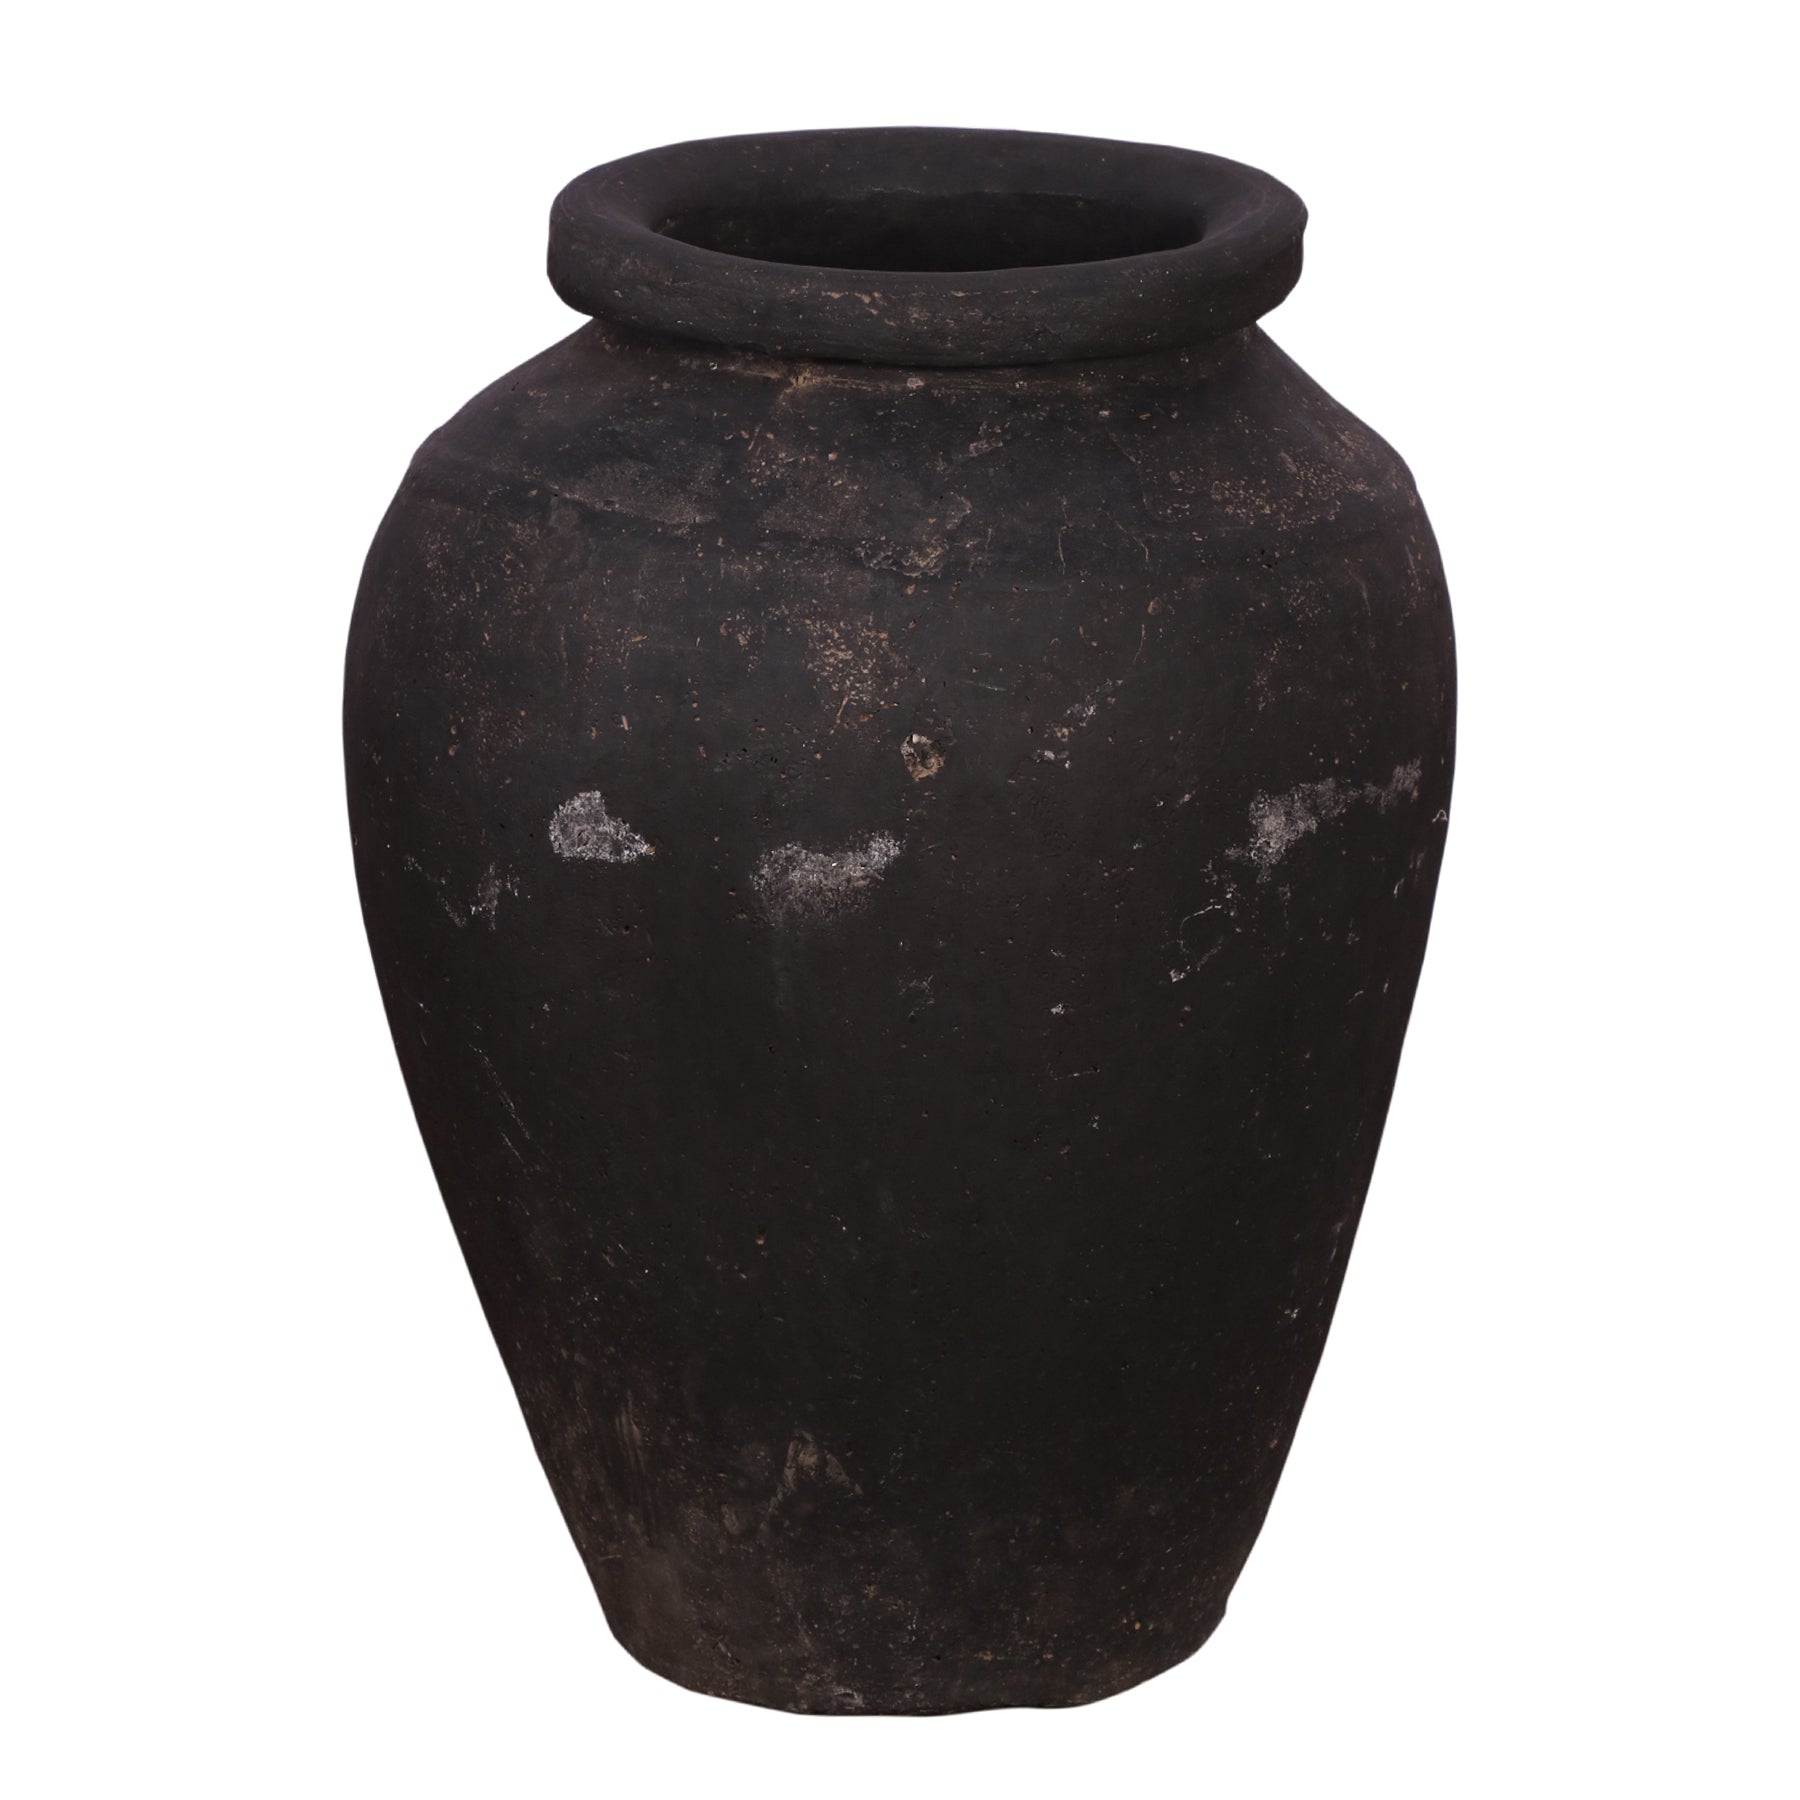 Antique Style Vase Pot